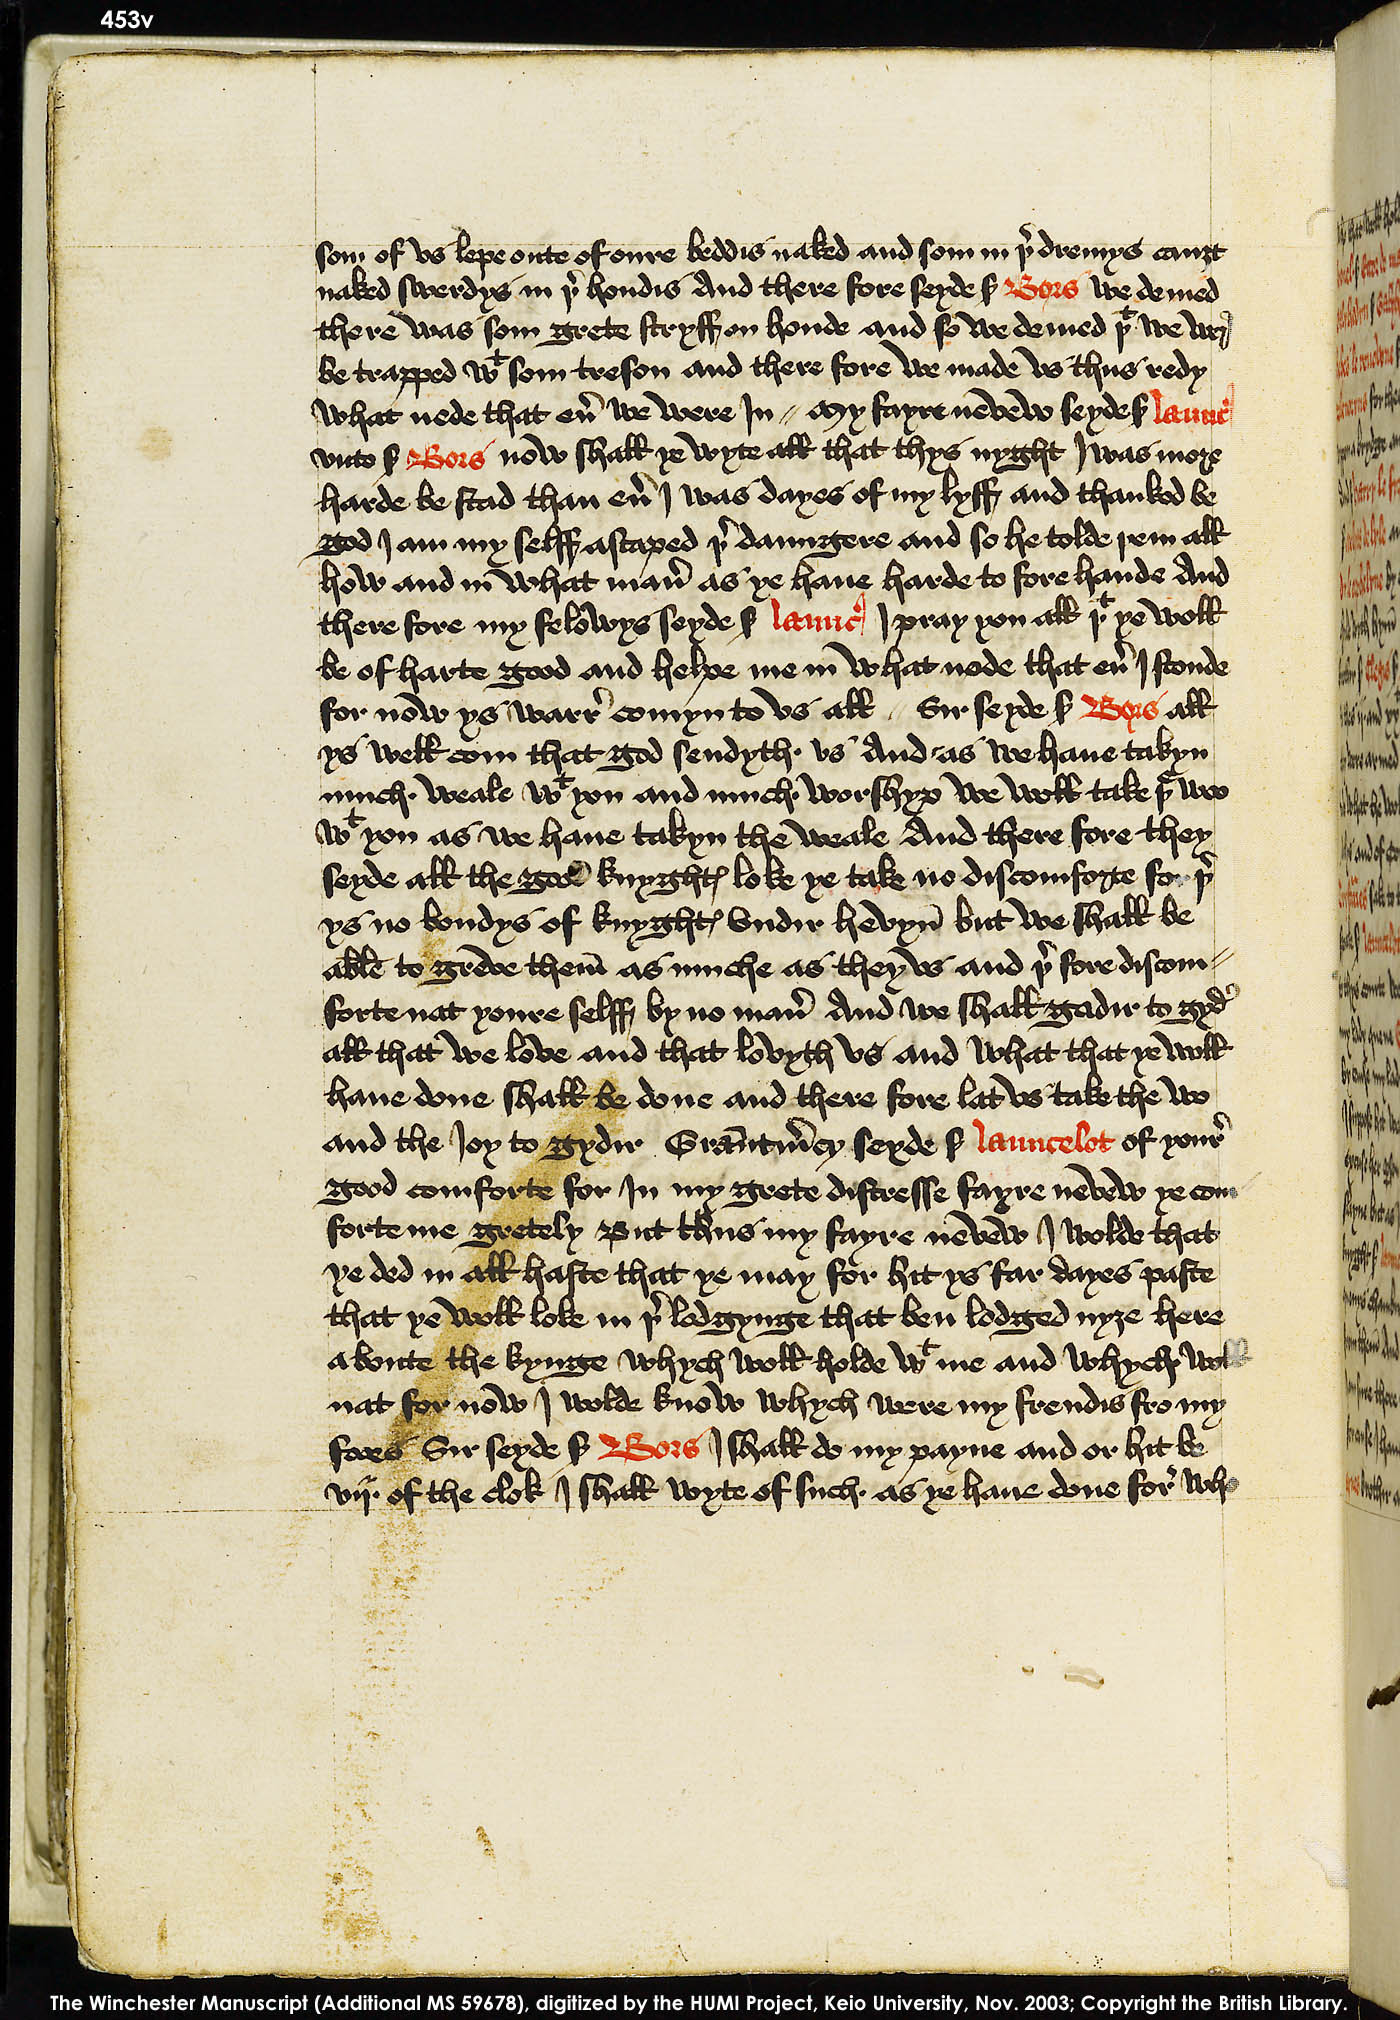 Folio 453v